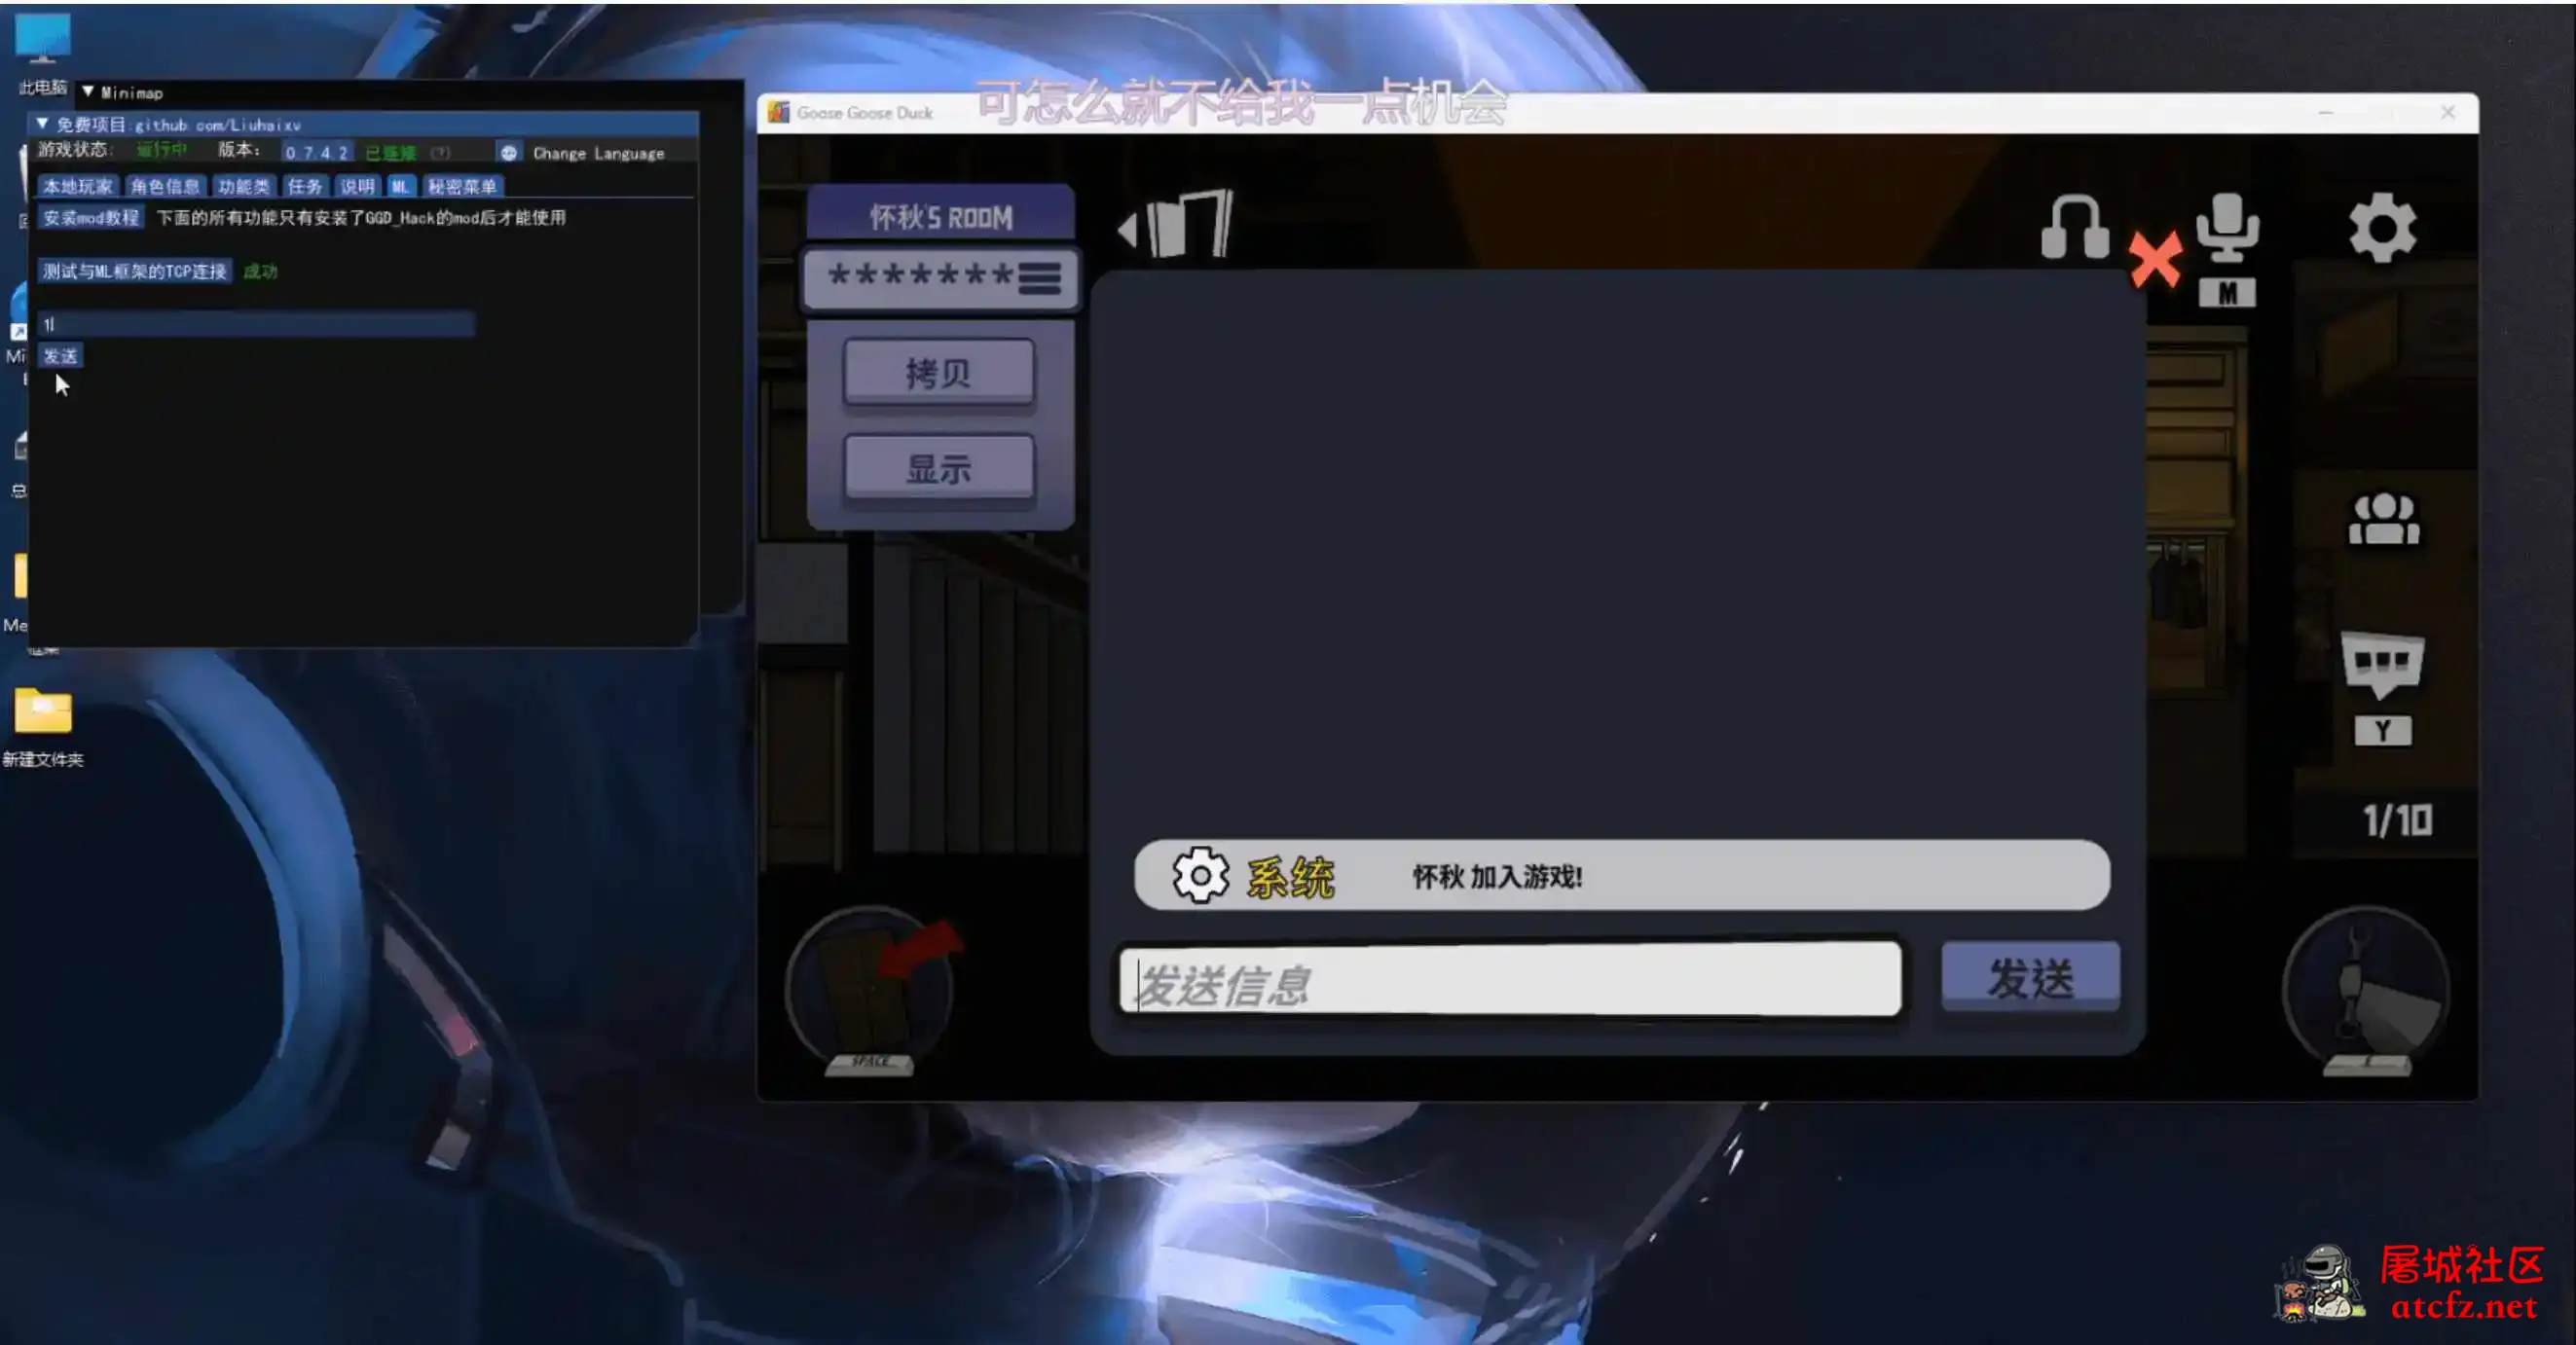 鹅鸭杀Minimp显玩家传送无冷却穿墙多功能辅助v1.5.1 屠城辅助网www.tcfz1.com9838